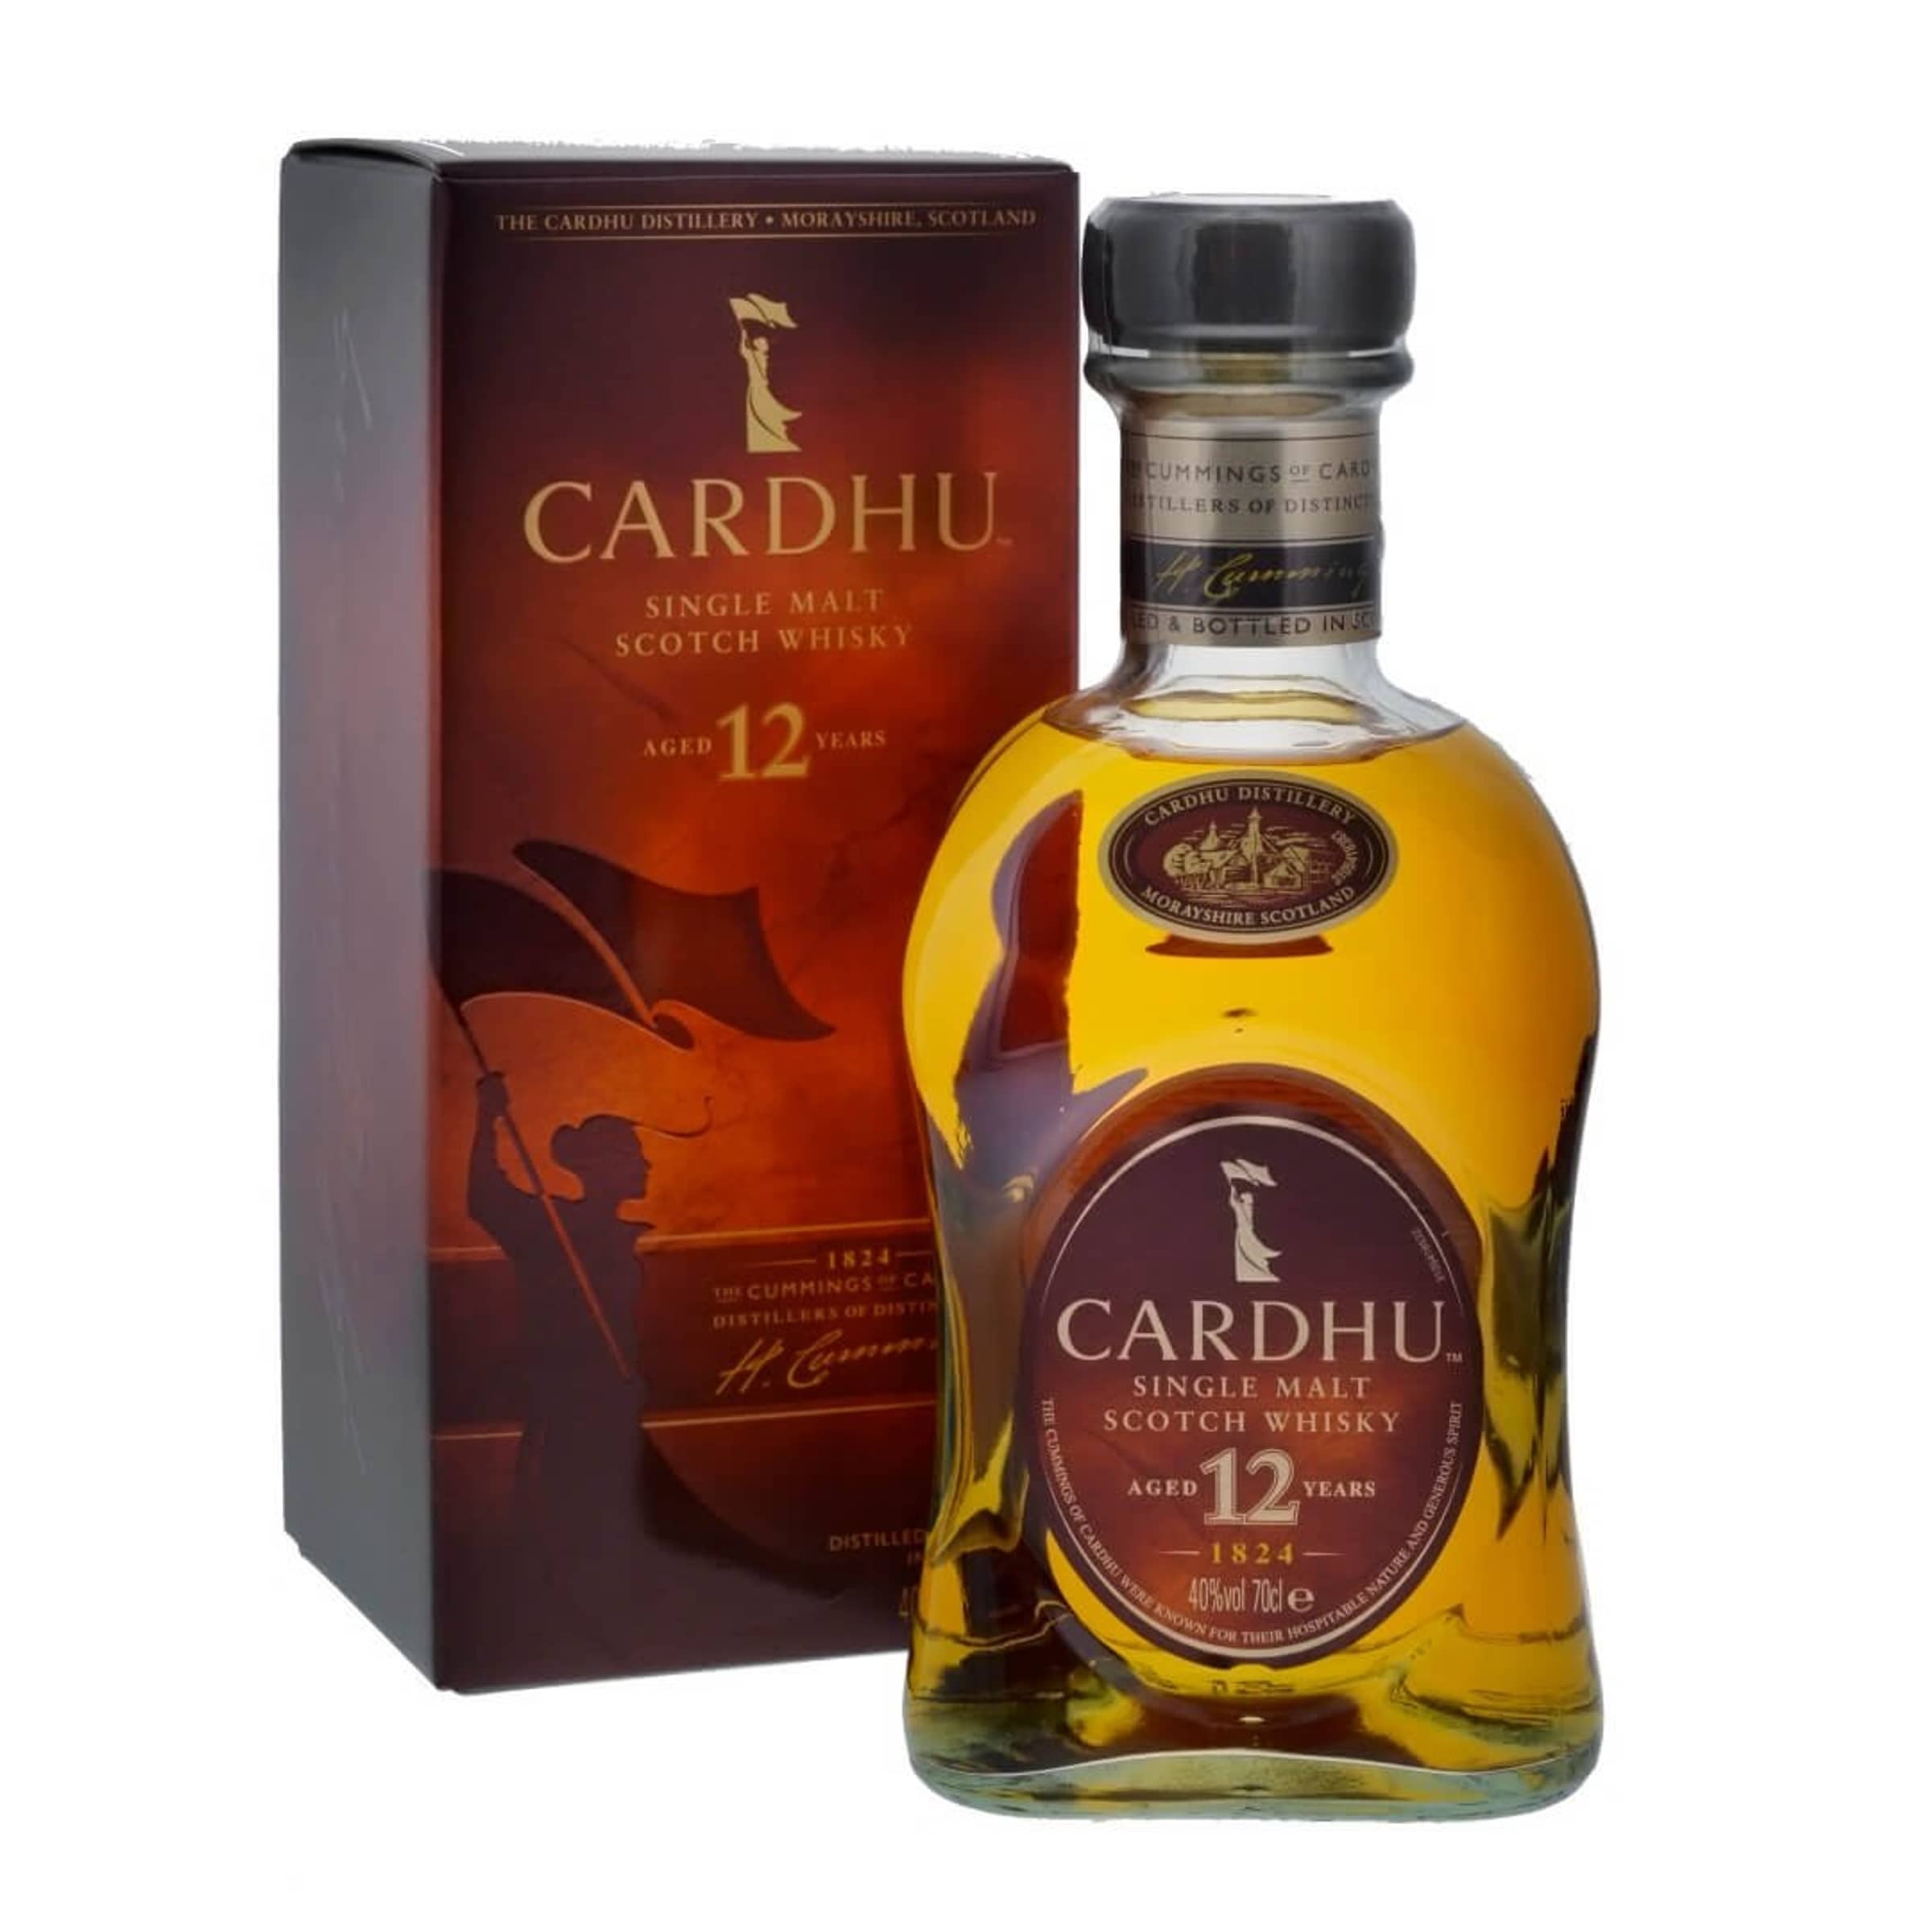 CARDHU Scotch whisky single malt écossais Gold Reserve 40% avec